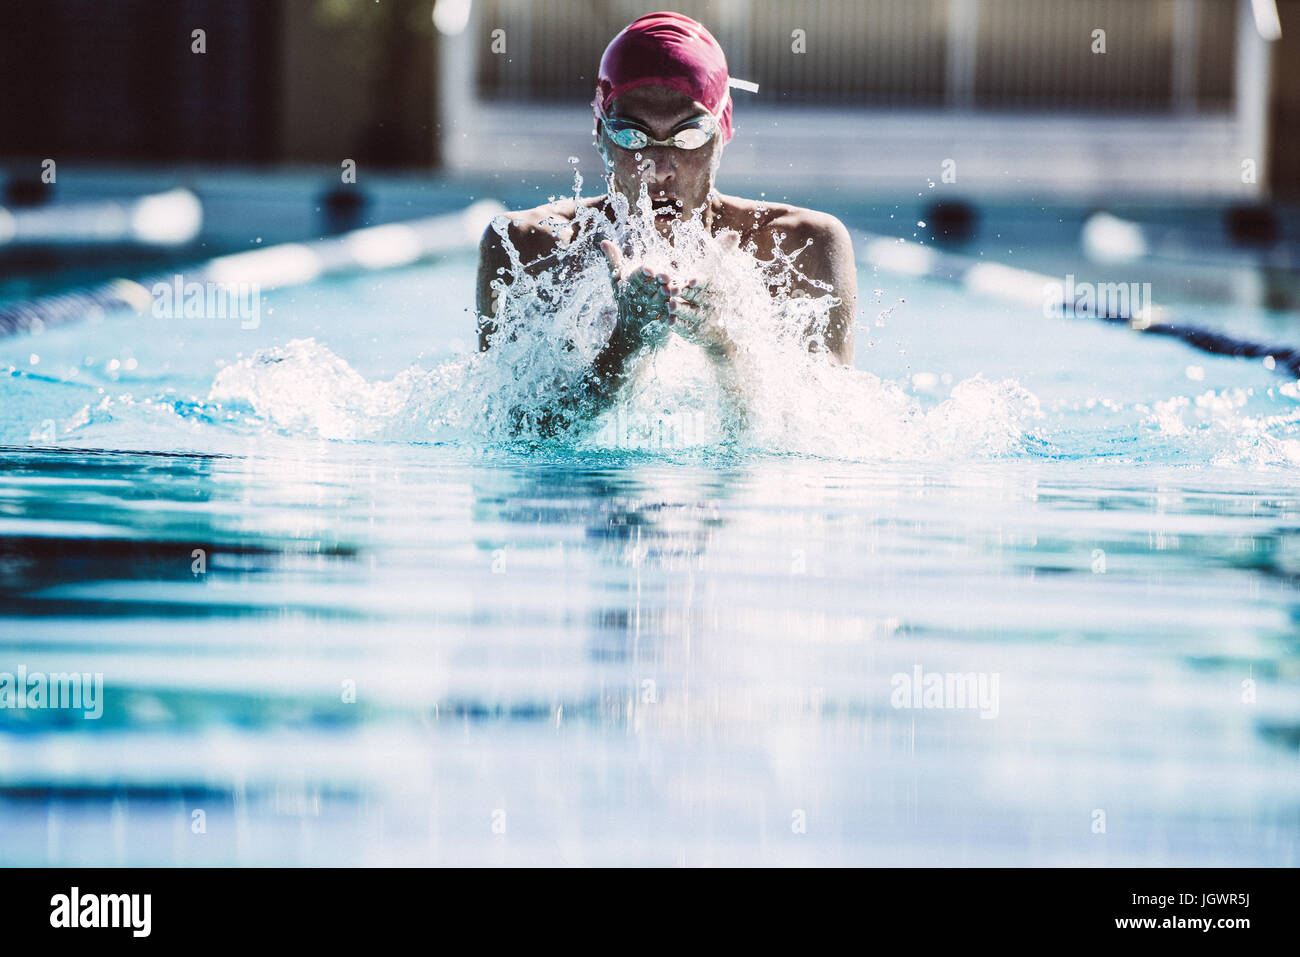 Swimmer splashing pool water on face Stock Photo